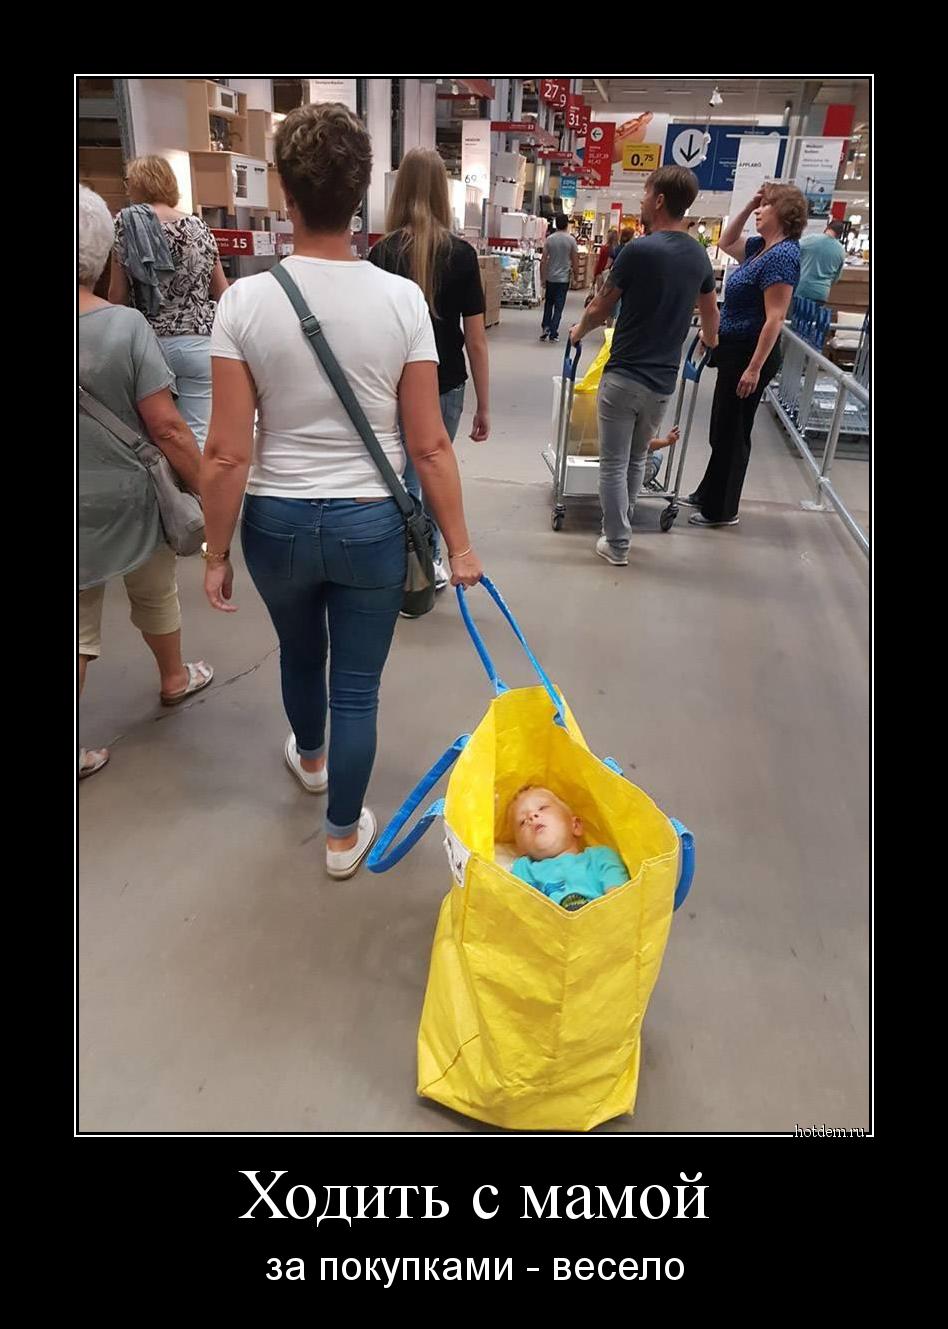 Ходить с мамой за покупками - весело